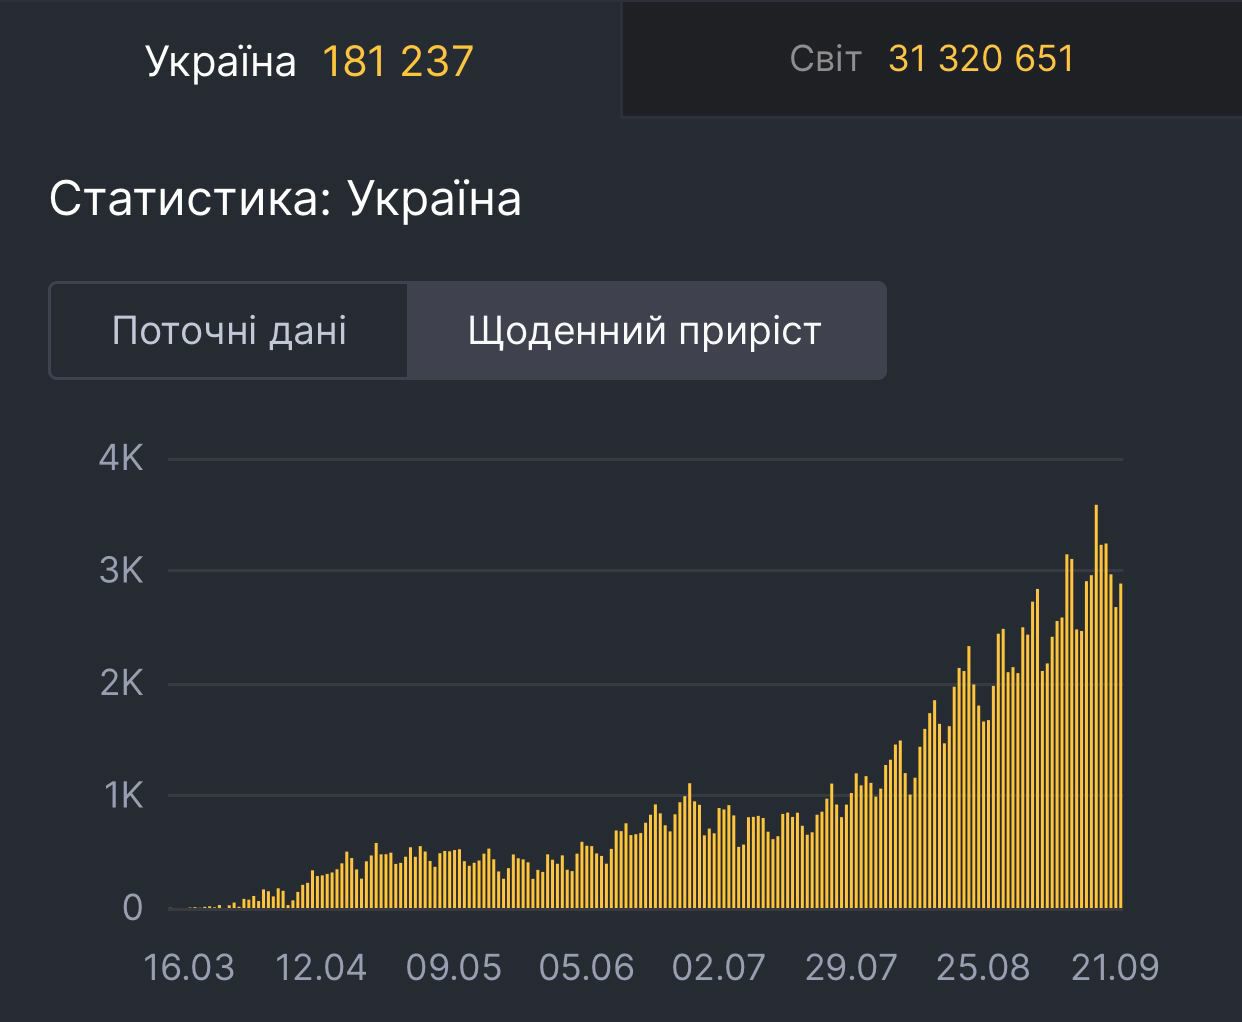 Новости сво на украине в телеграмме. Телеграм Украина. Telegram in Ukraine.